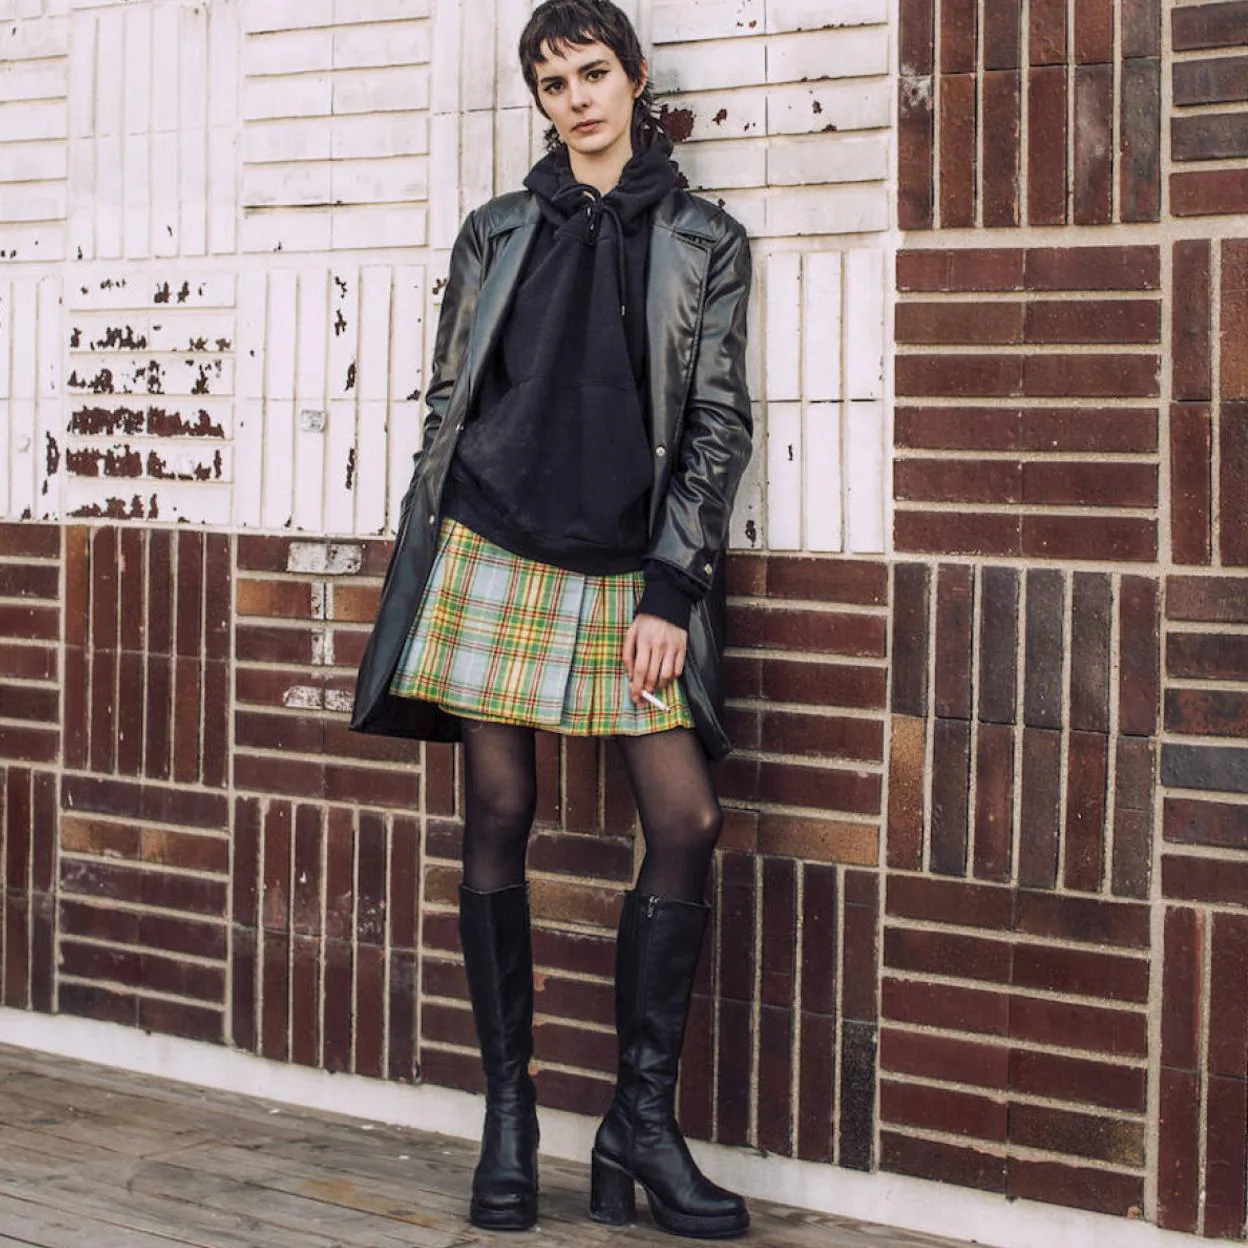 Minifalda de cuadros y botas altas, el look que marcó los años 60 vuelve a  ser tendencia esta temporada | Mujer Hoy